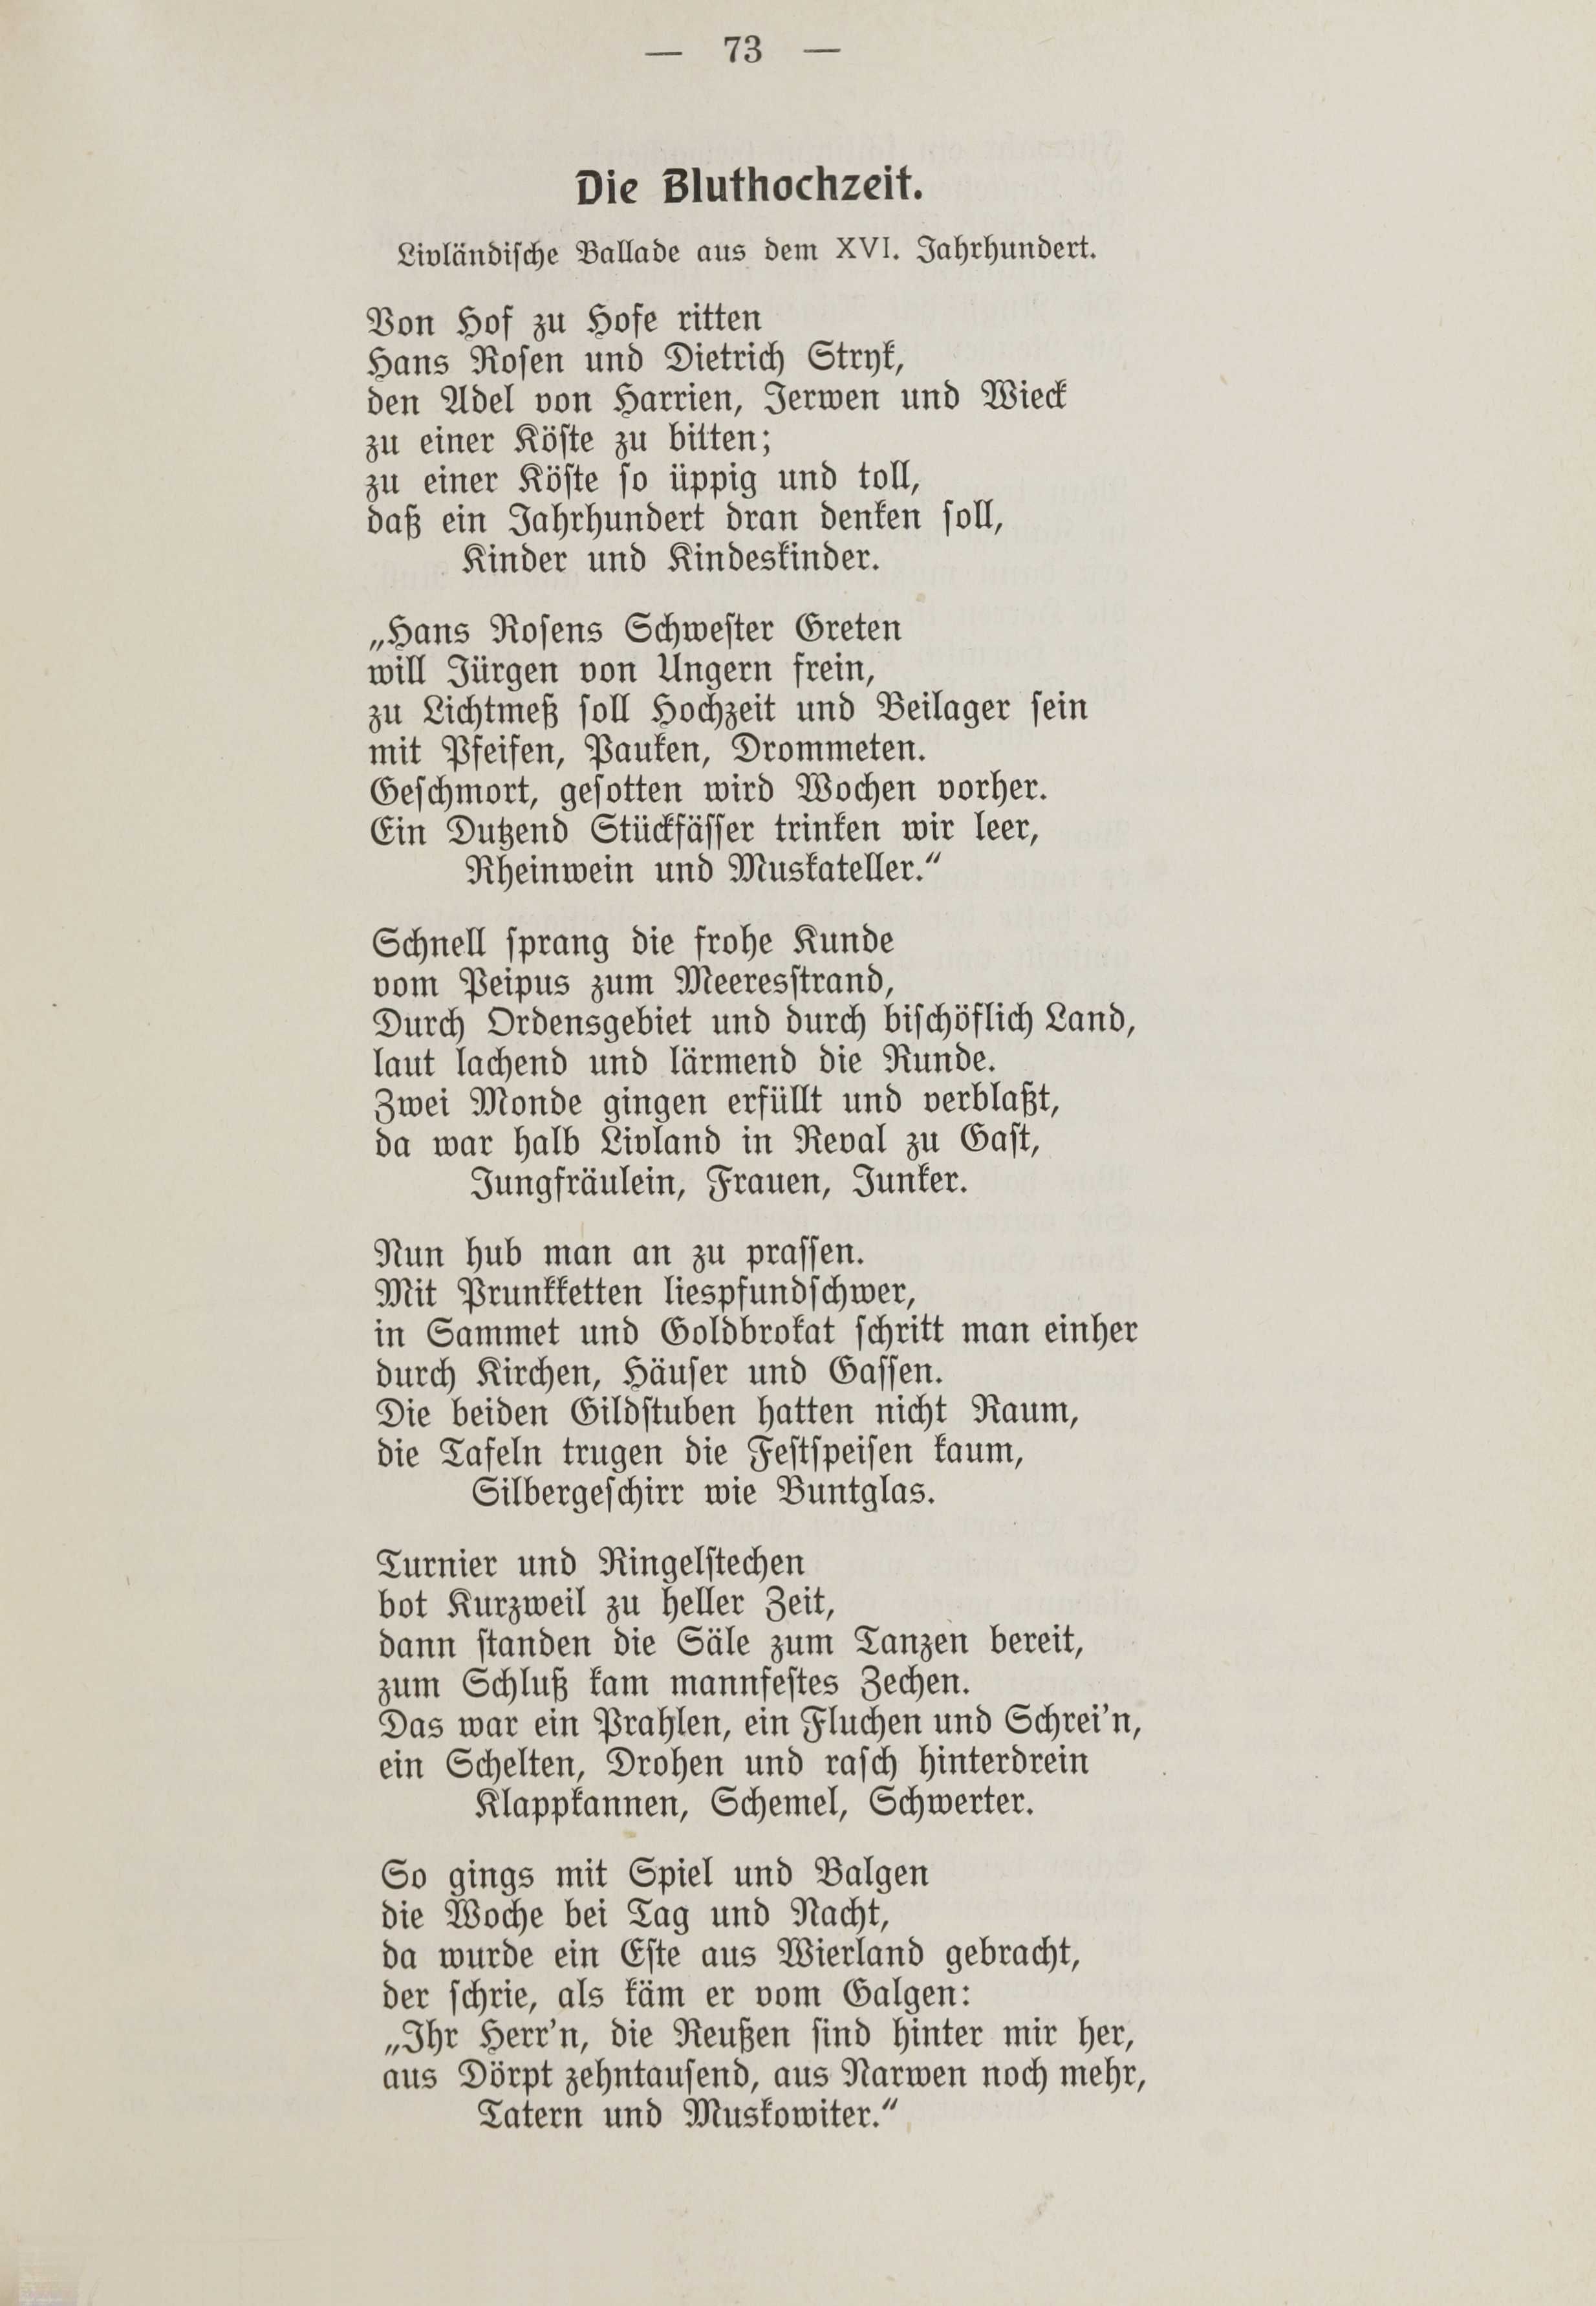 Deutsche Monatsschrift für Russland [1] (1912) | 80. (73) Main body of text